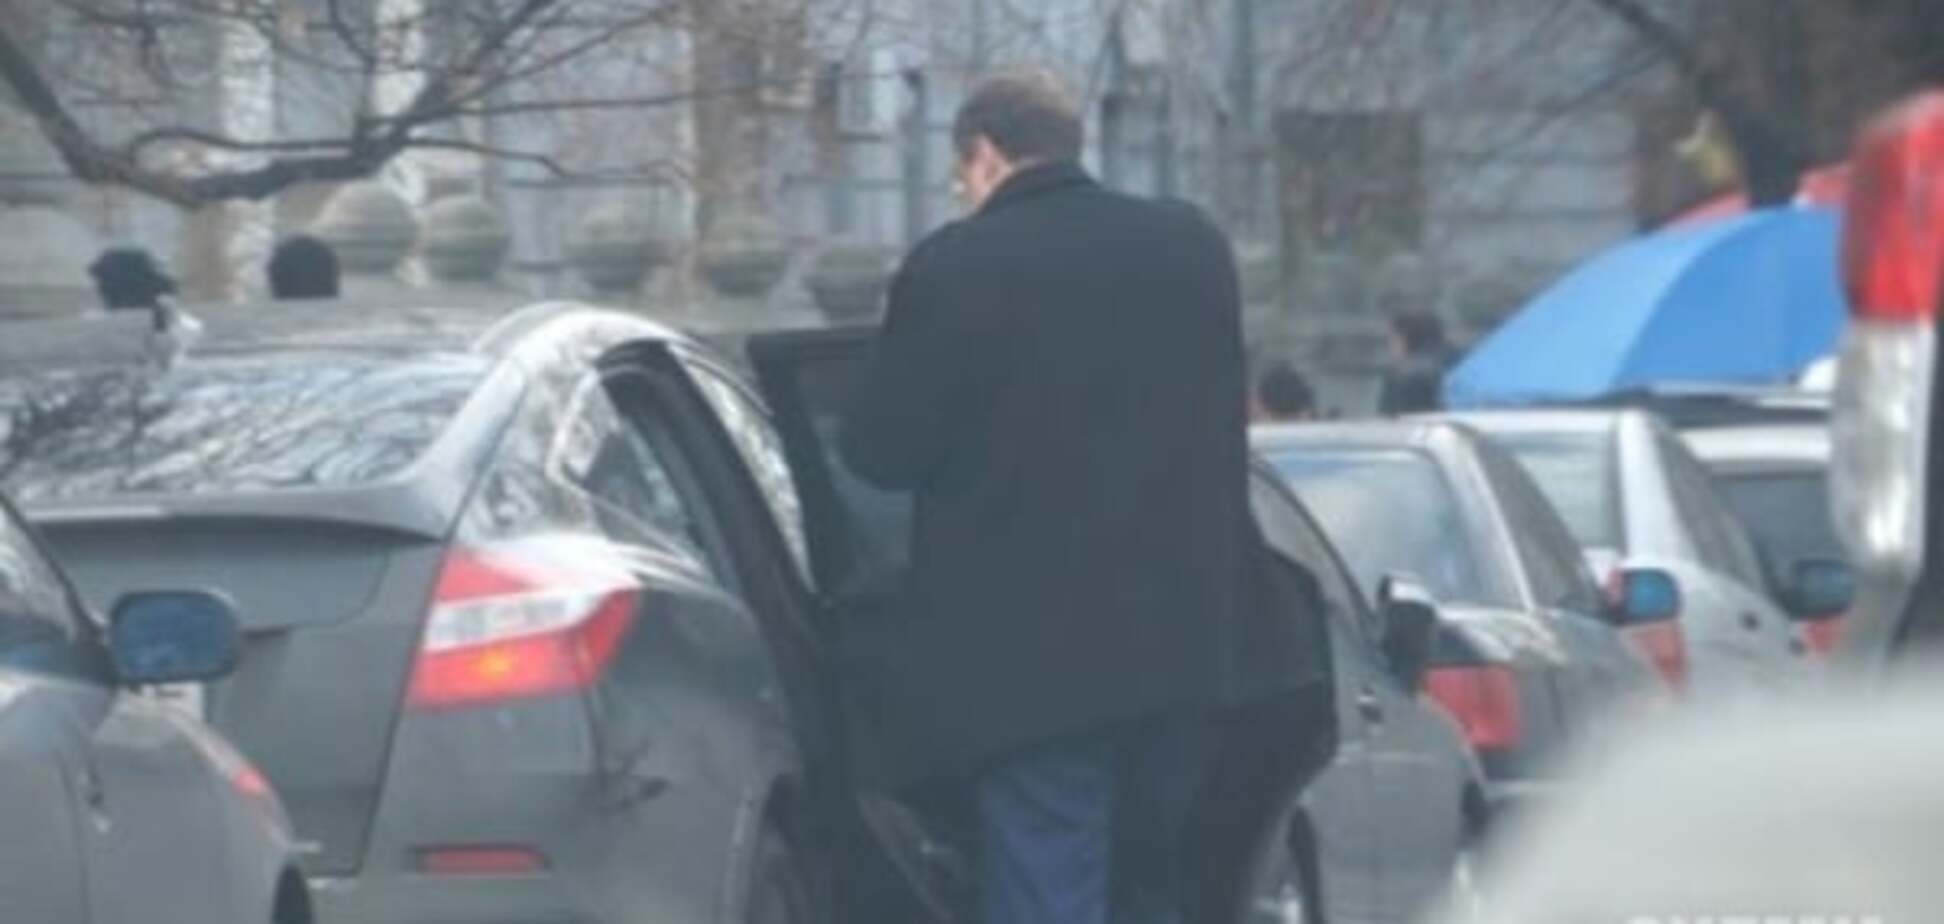 Геращенко 'засекли' на дорогущем авто: говорит, одолжил у товарища